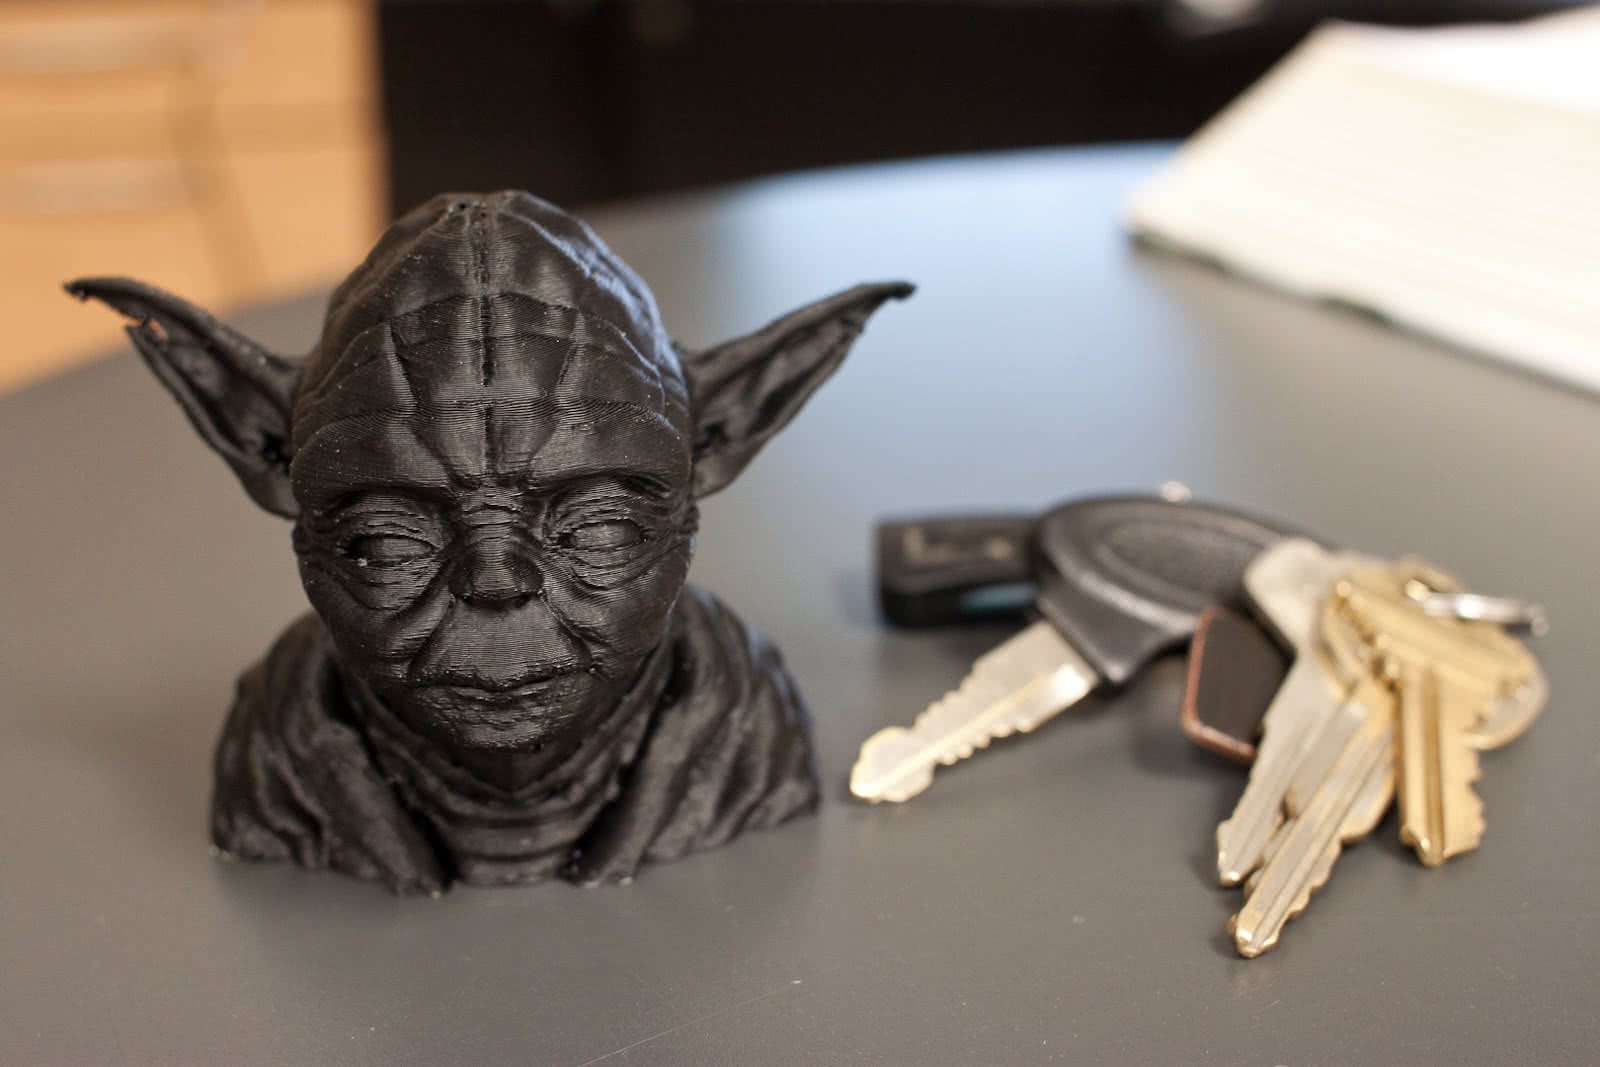 3D Printing at Home, RepRap!